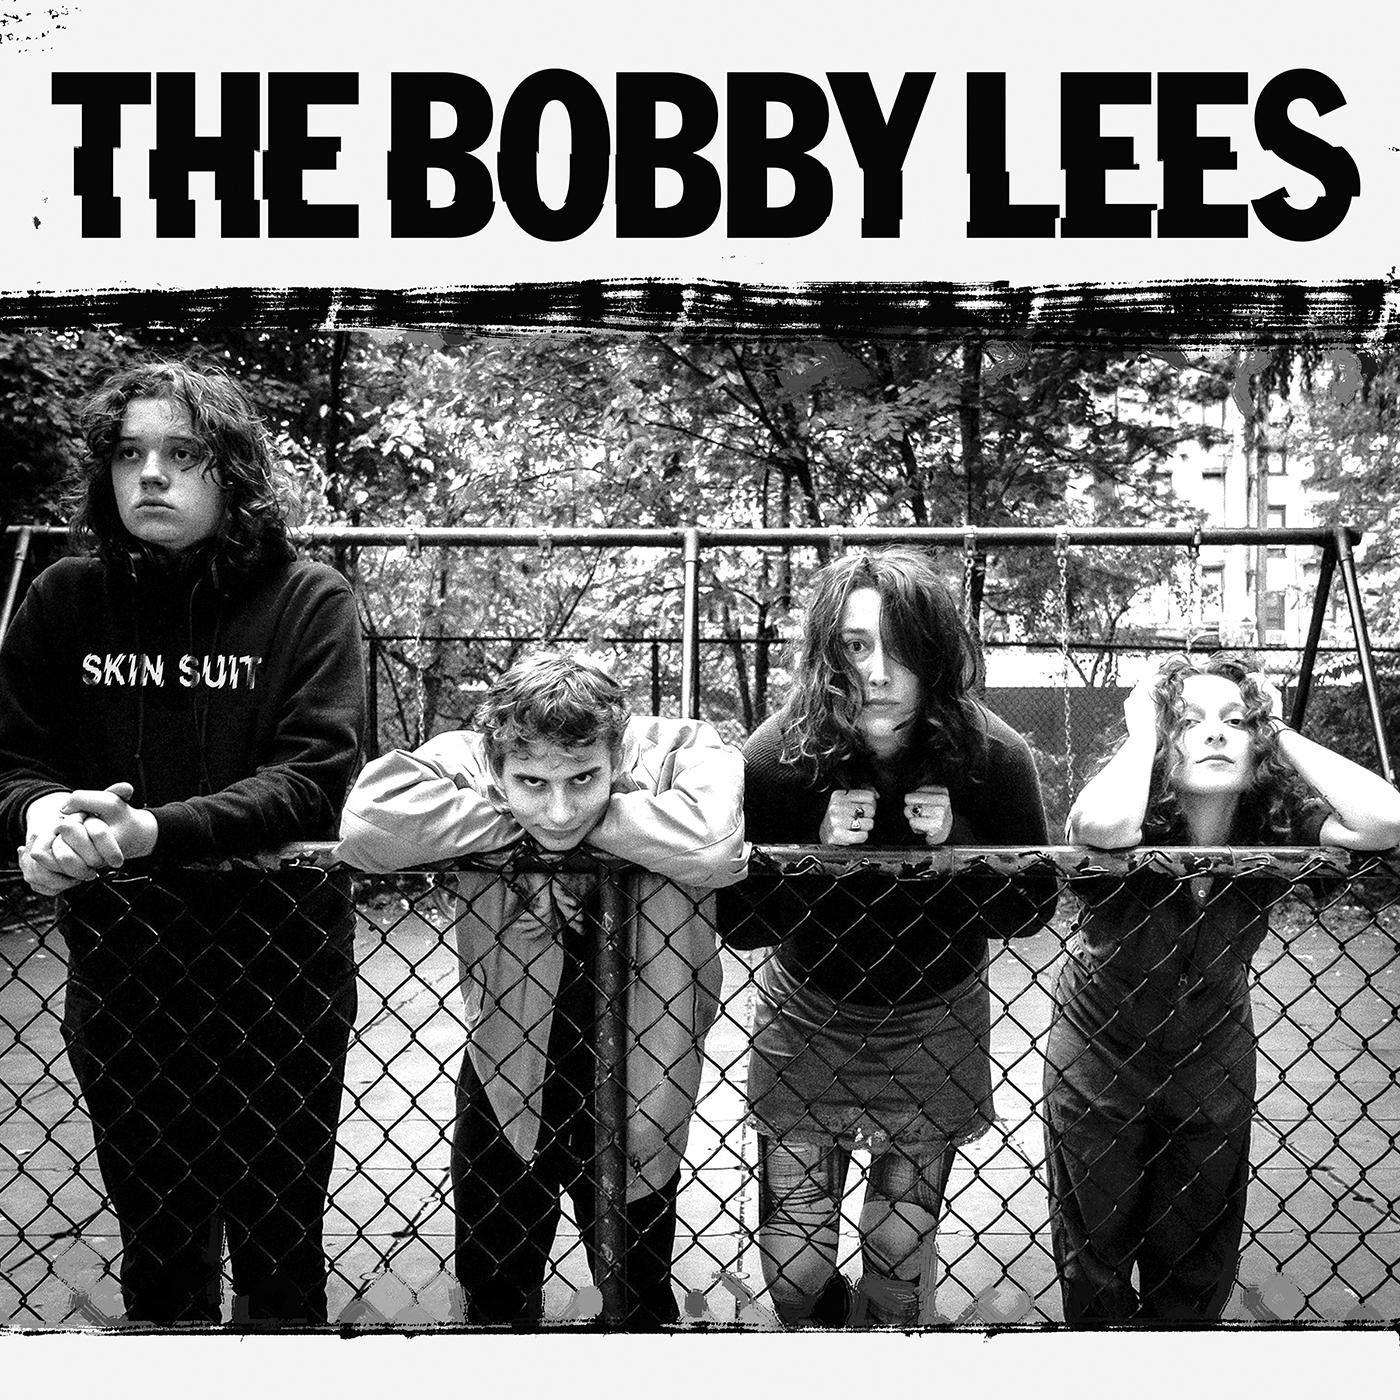 (Vinyl) - Bobby - SKIN SUIT Lees